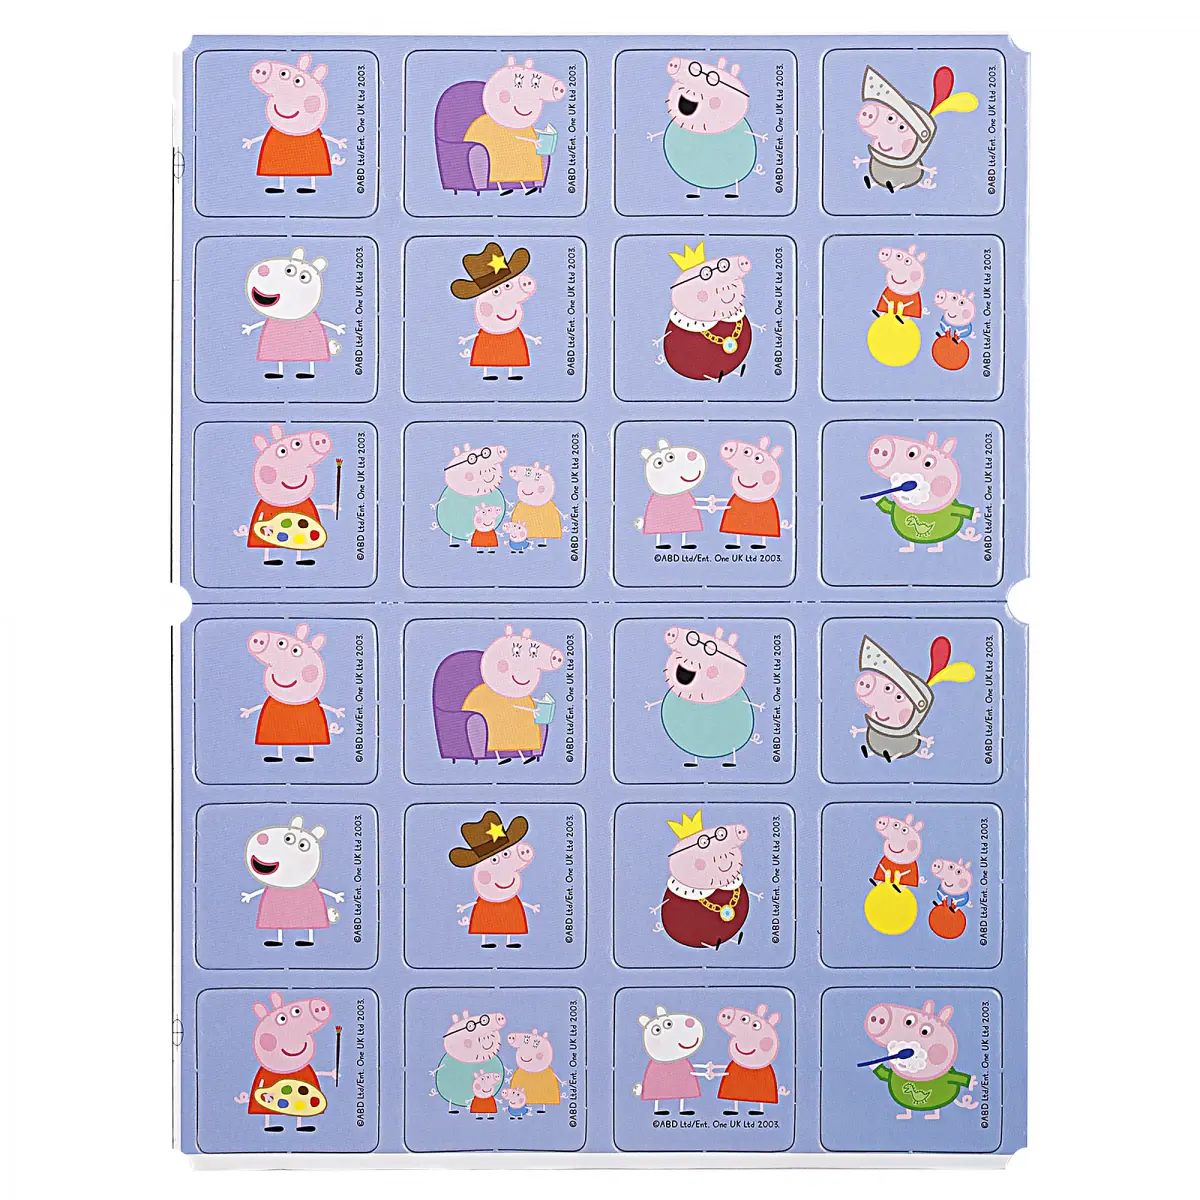 Funskool Peppa Pig Memory Game, 3Y+, Multicolour